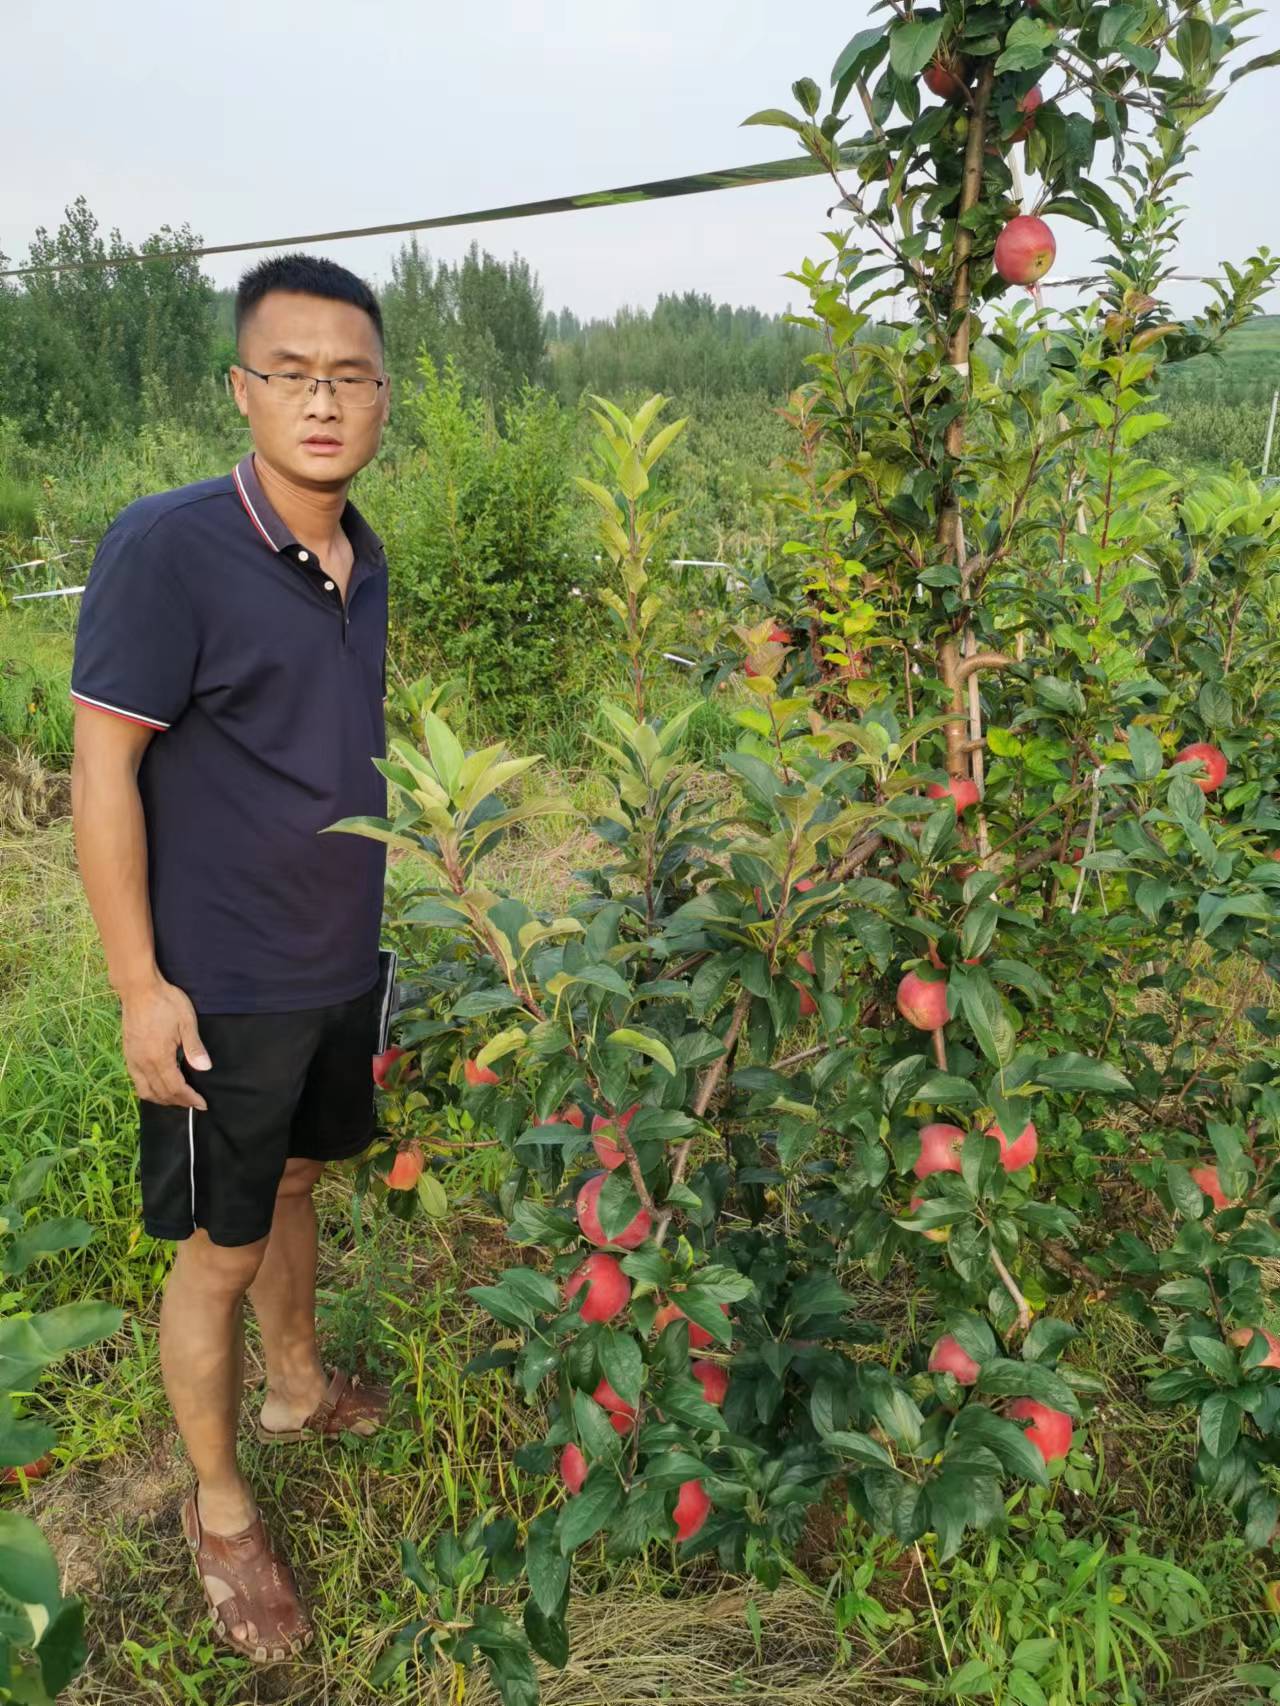 八棱海棠砧木Hff63苹果树苗,7公分育苗